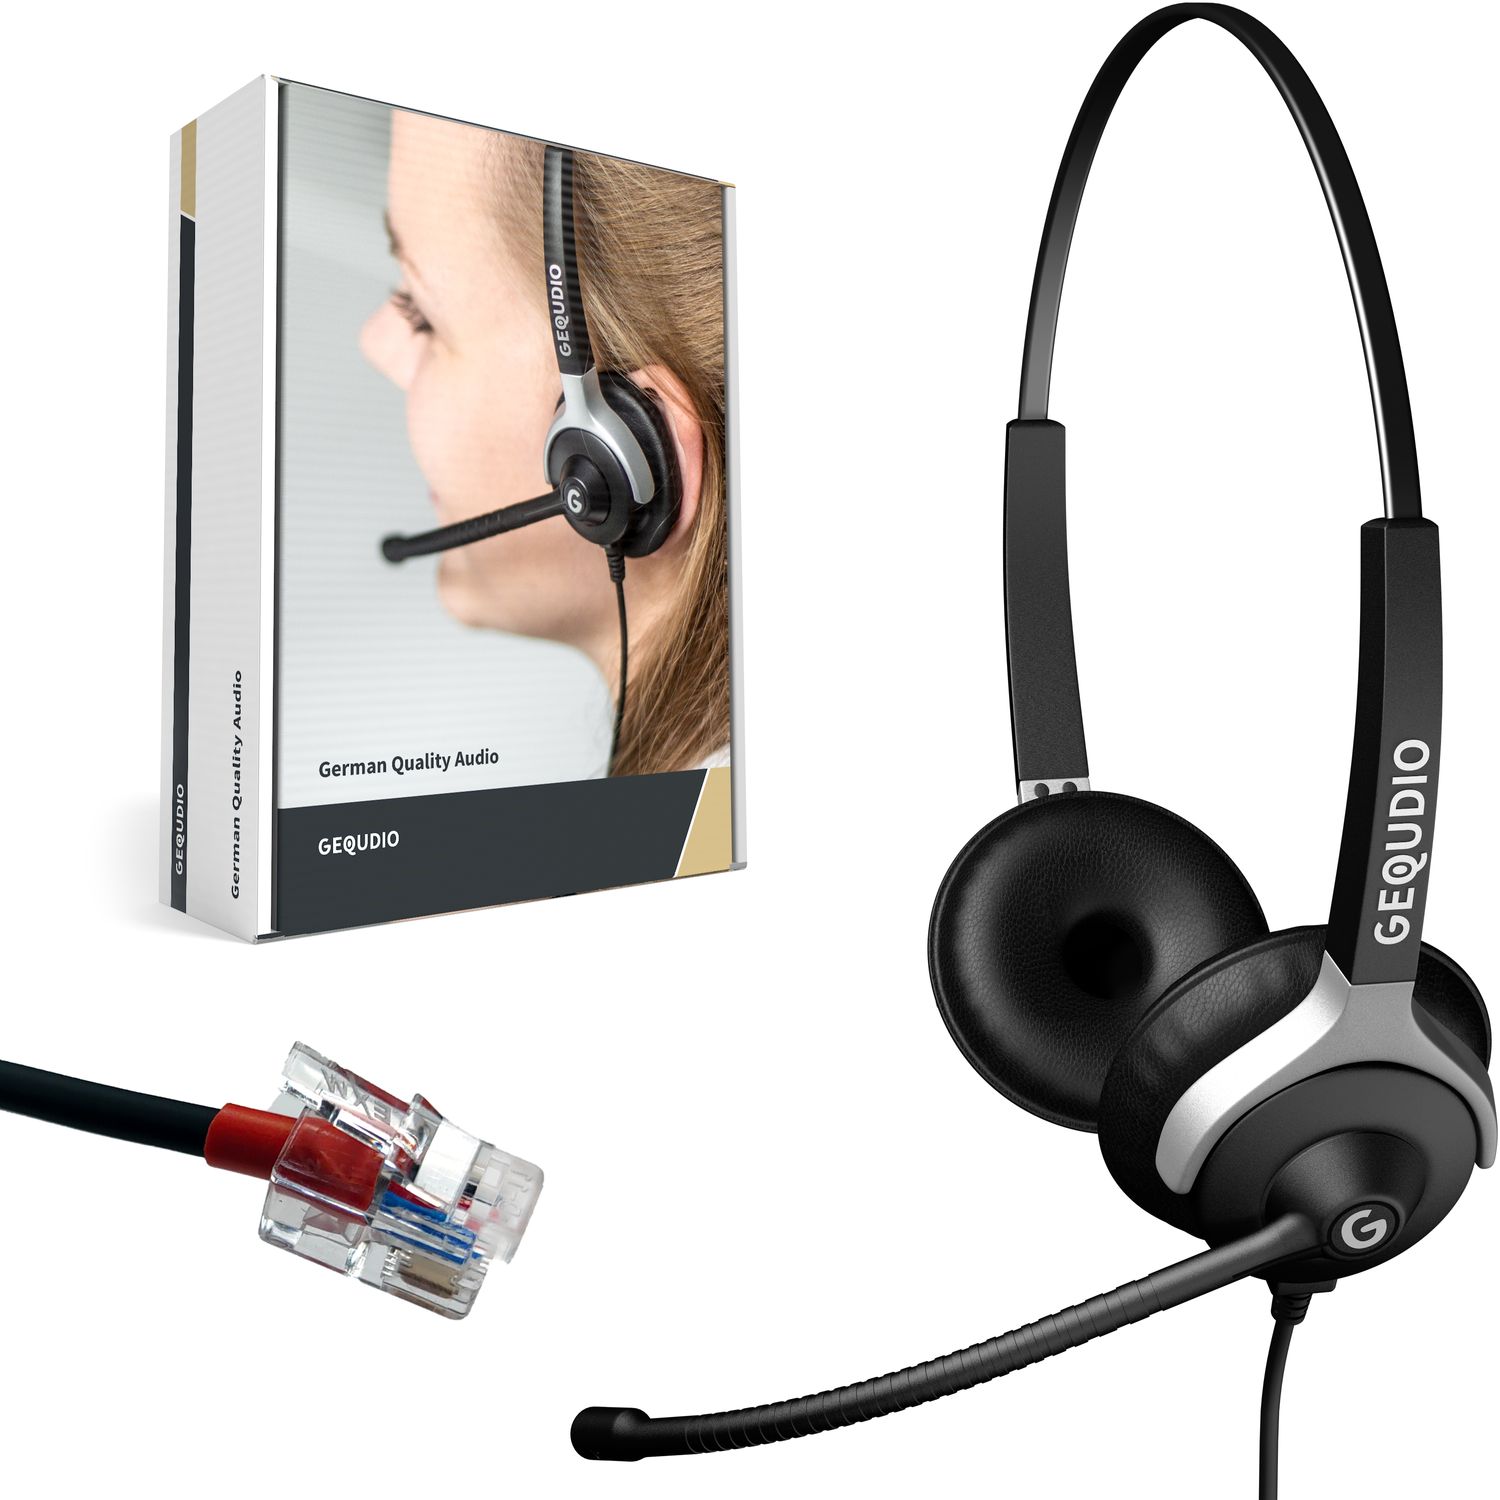 GEQUDIO Headset 2-Ohr für Yealink, Snom, Grandstream mit Kabel, On-ear Headset Schwarz